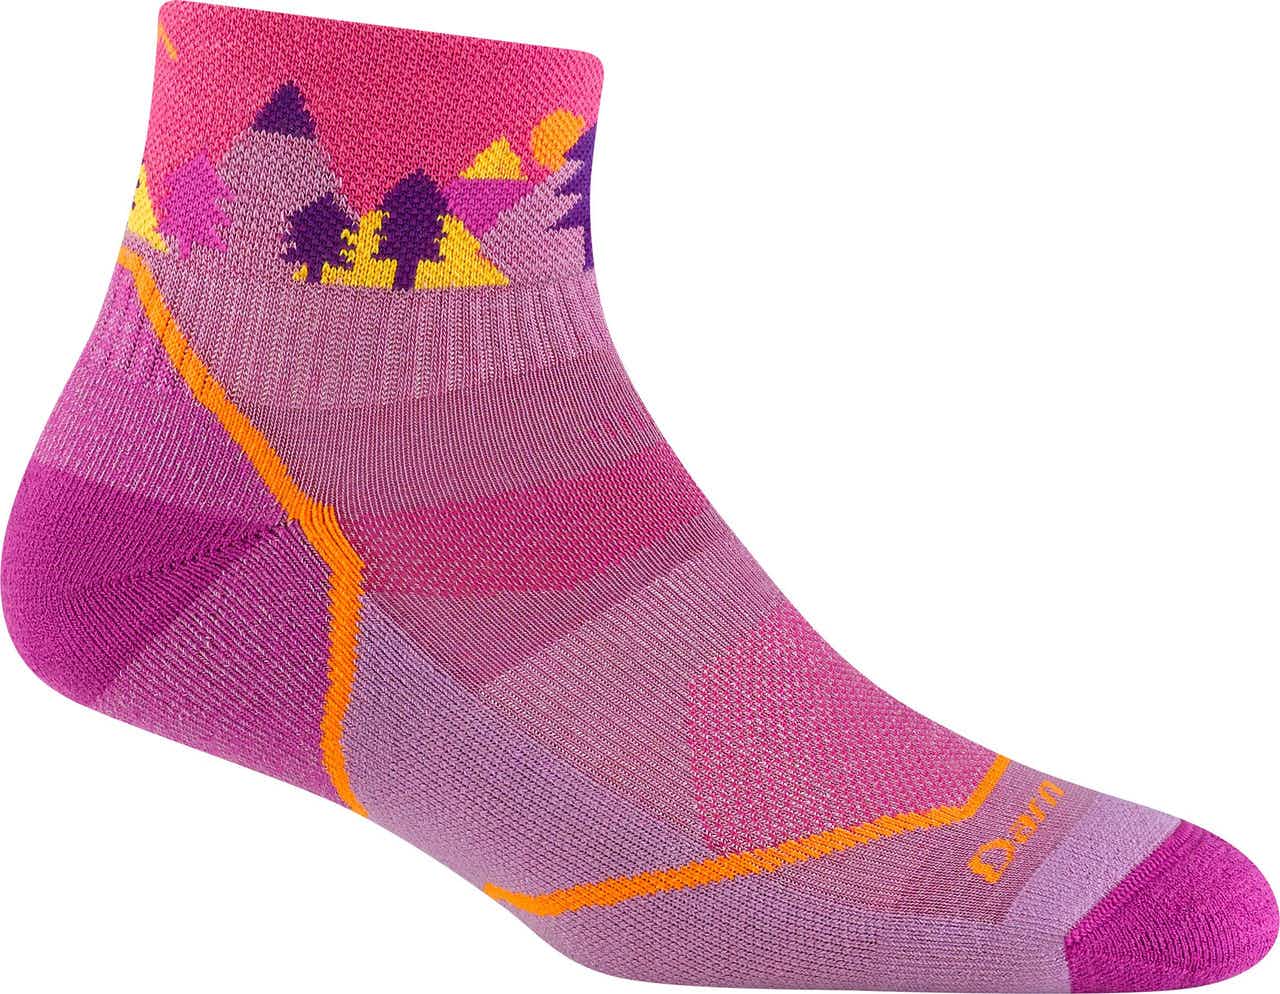 Quest 1/4 Lightweight Socks Violet